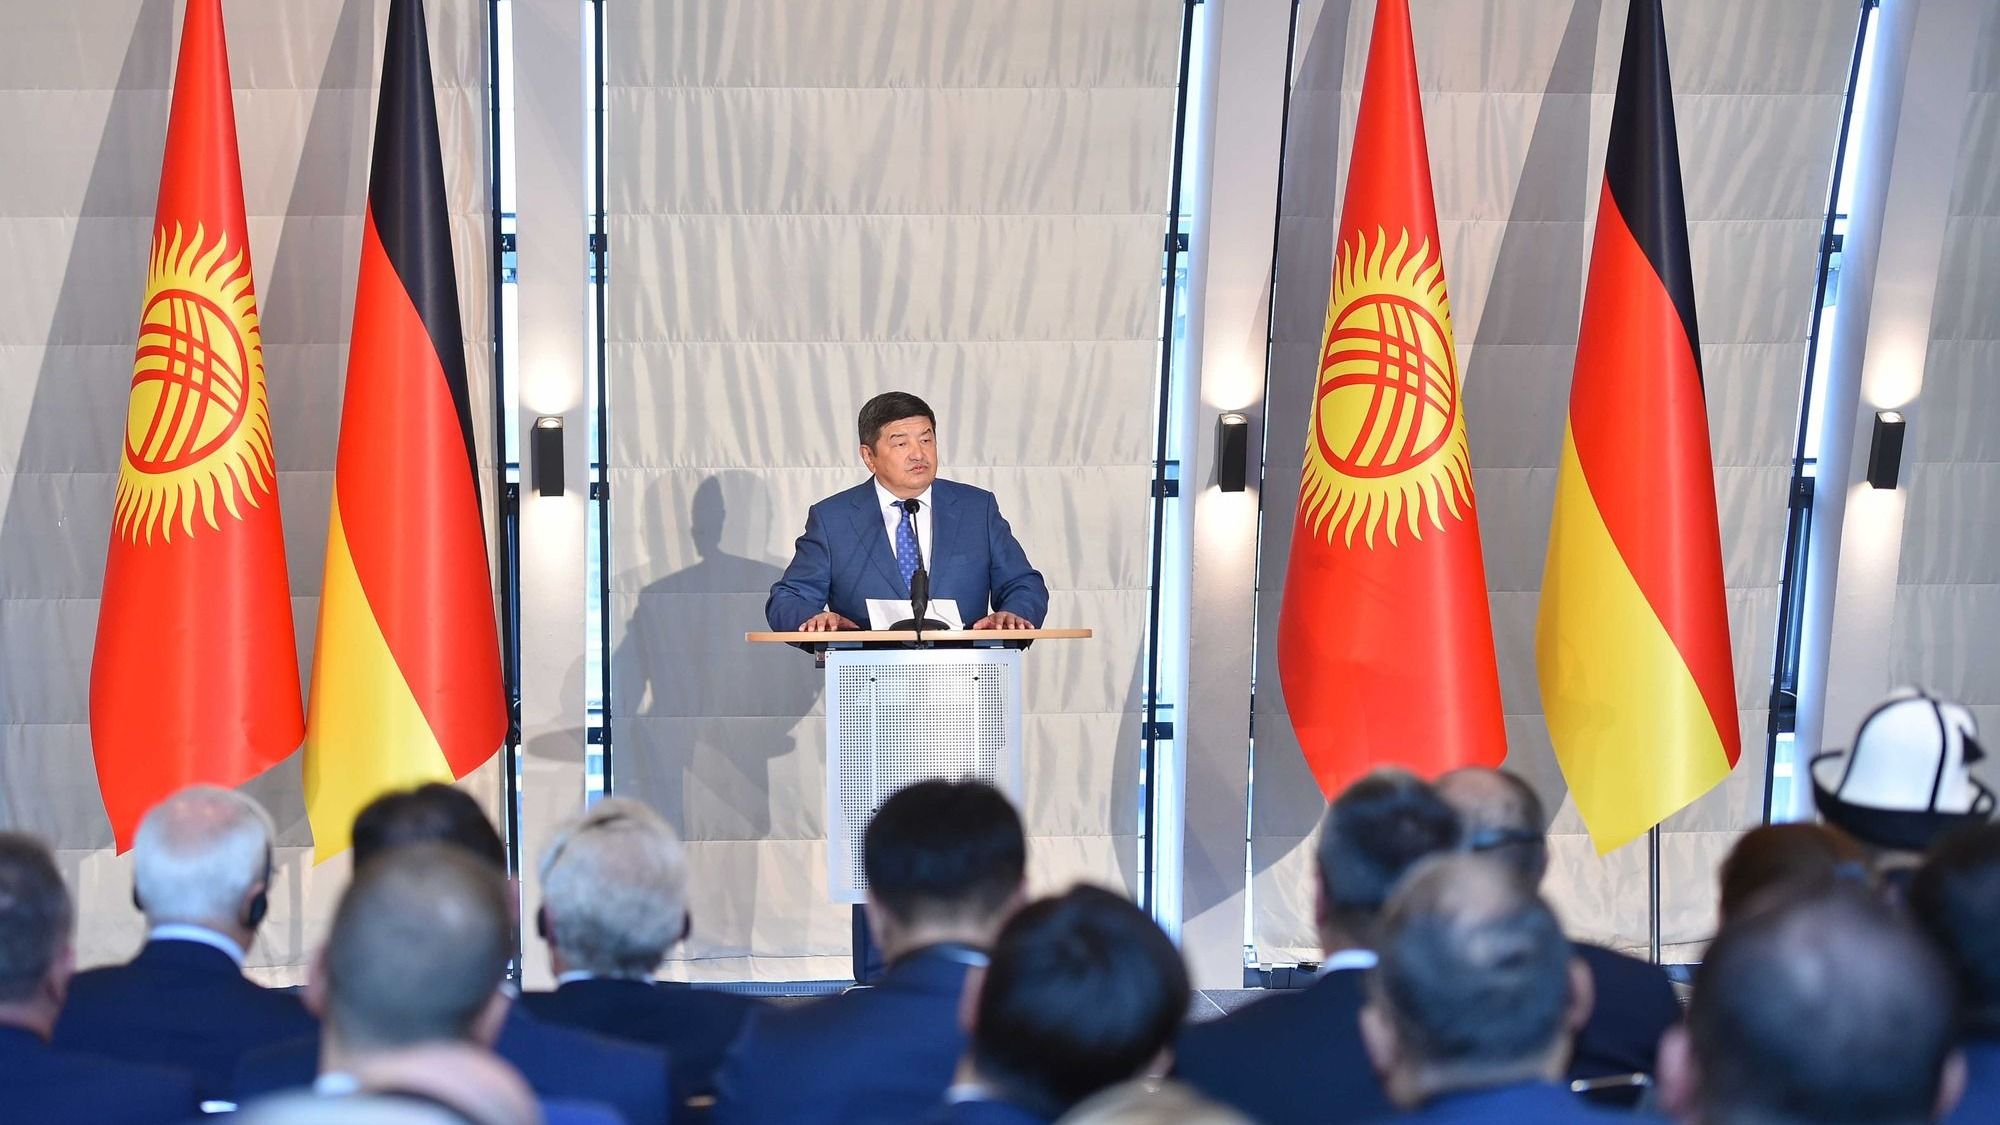 Акылбек Жапаров предложил немецким авиакомпаниям льготные условия при открытии рейсов в Кыргызстан